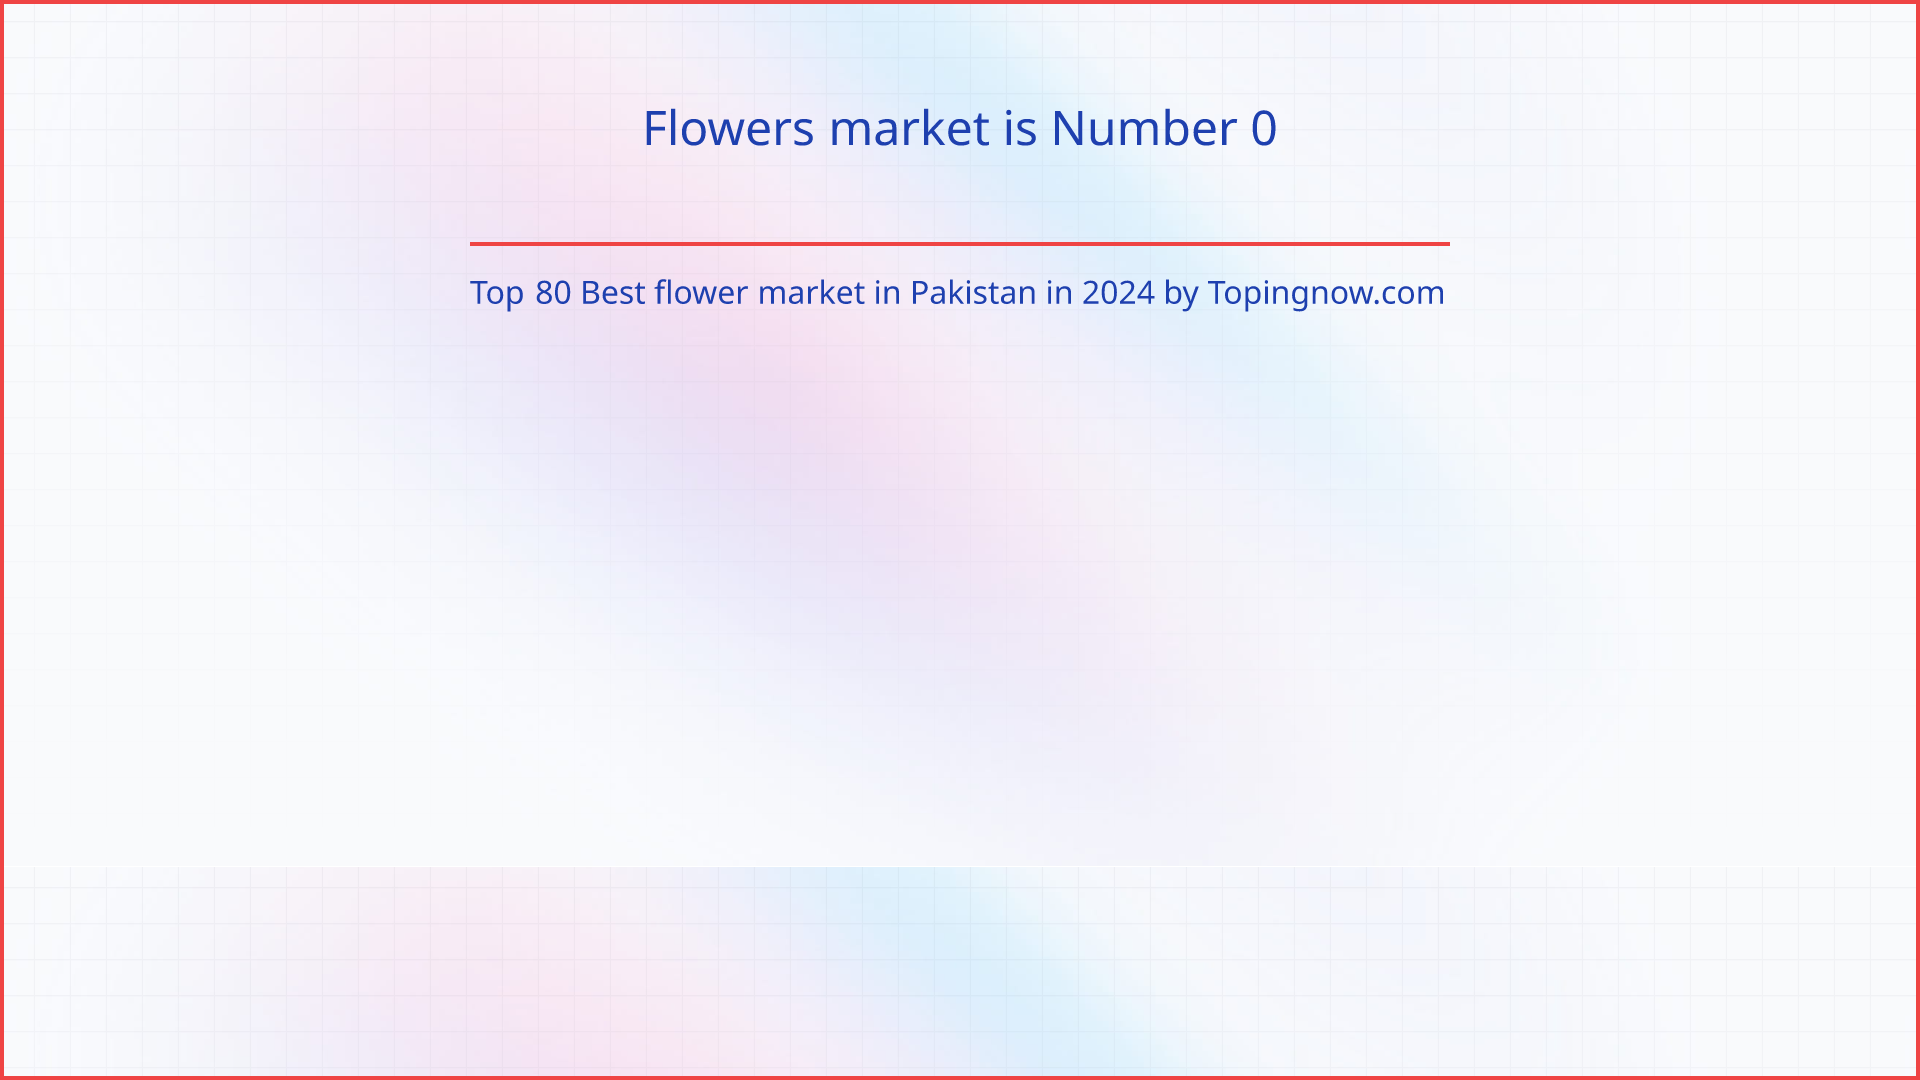 Flowers market: Top 80 Best flower market in Pakistan in 2024